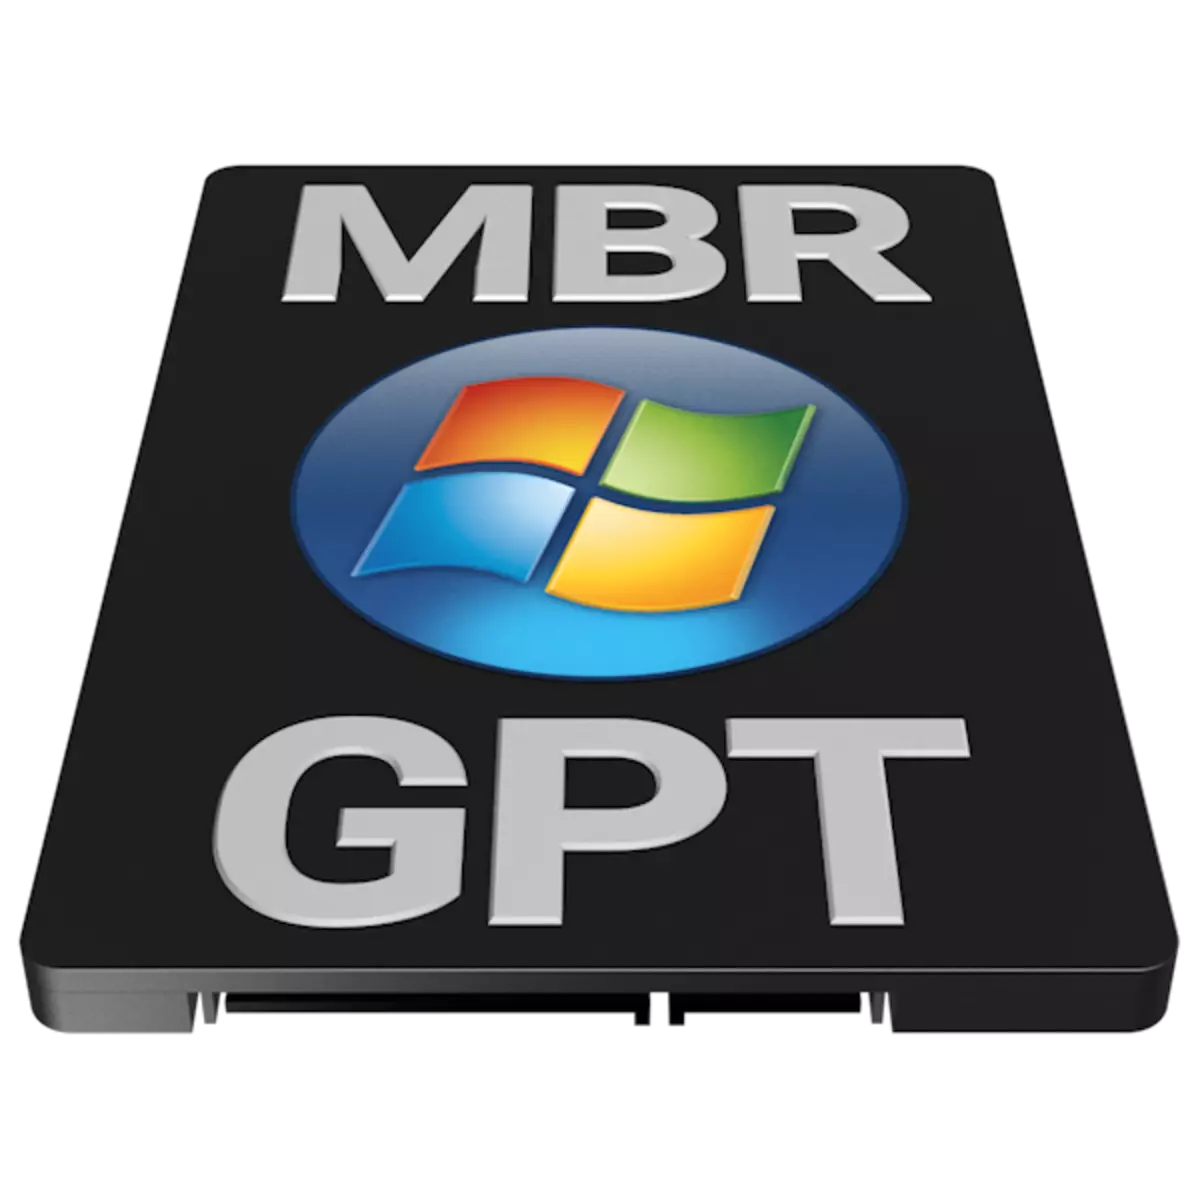 GPT atanapi MBR pikeun Windows 7 Anu Pikeun dipilih